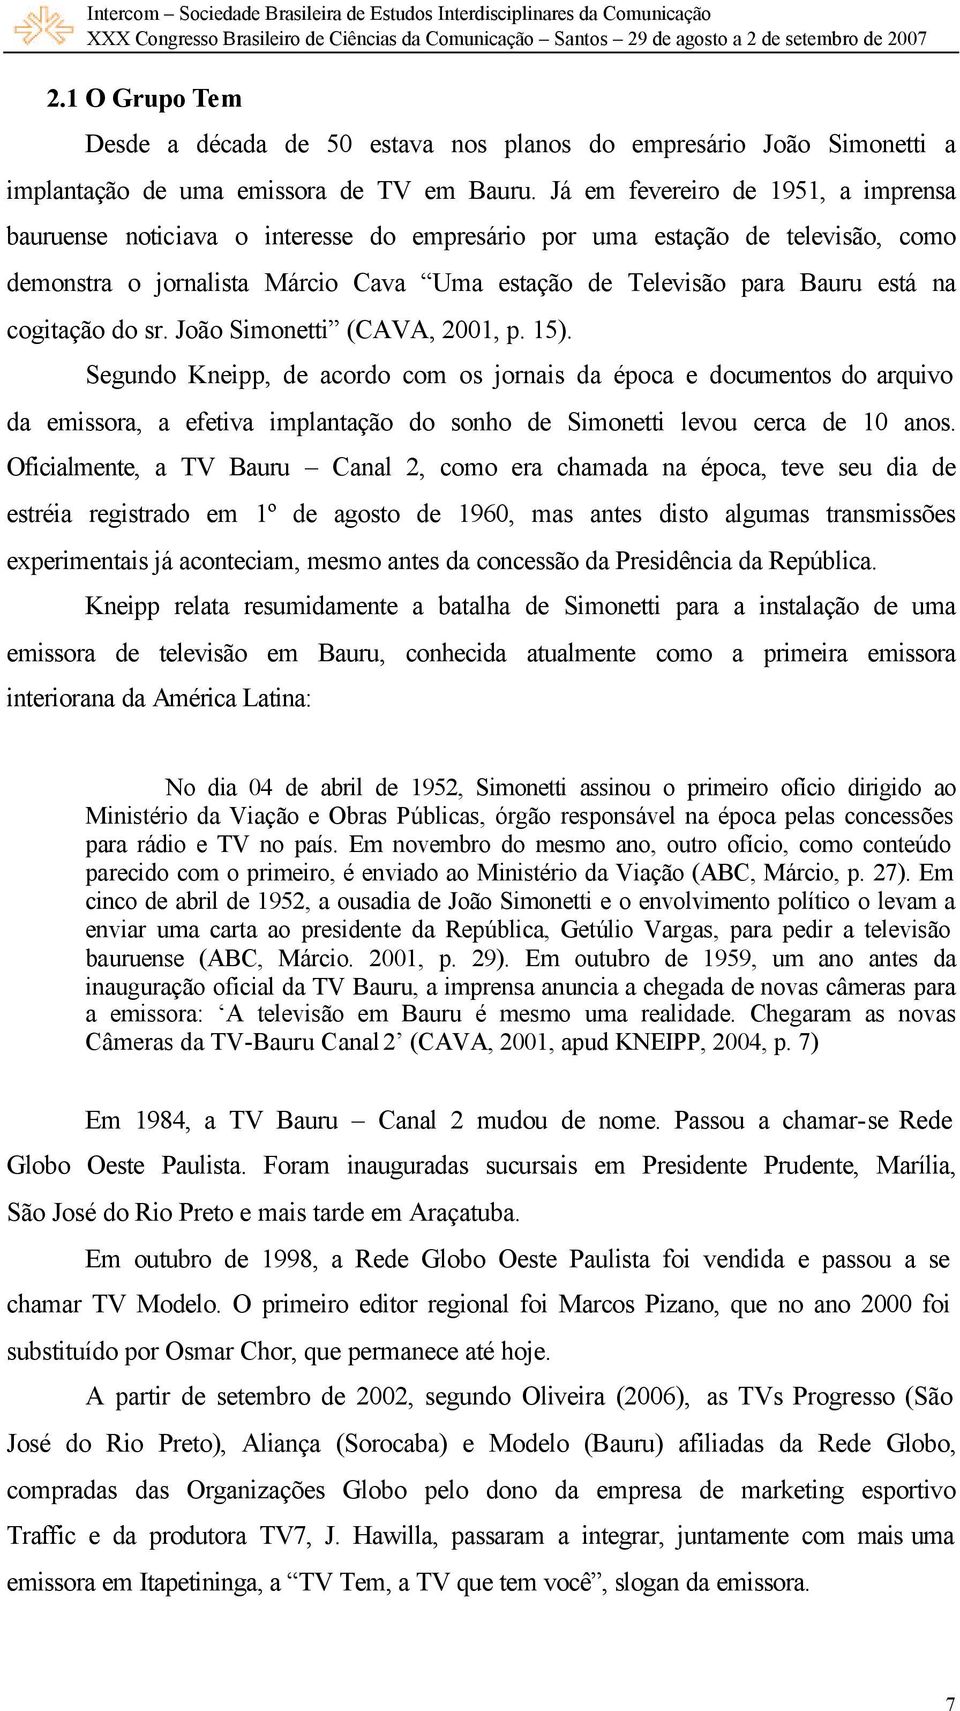 cogitação do sr. João Simonetti (CAVA, 2001, p. 15).